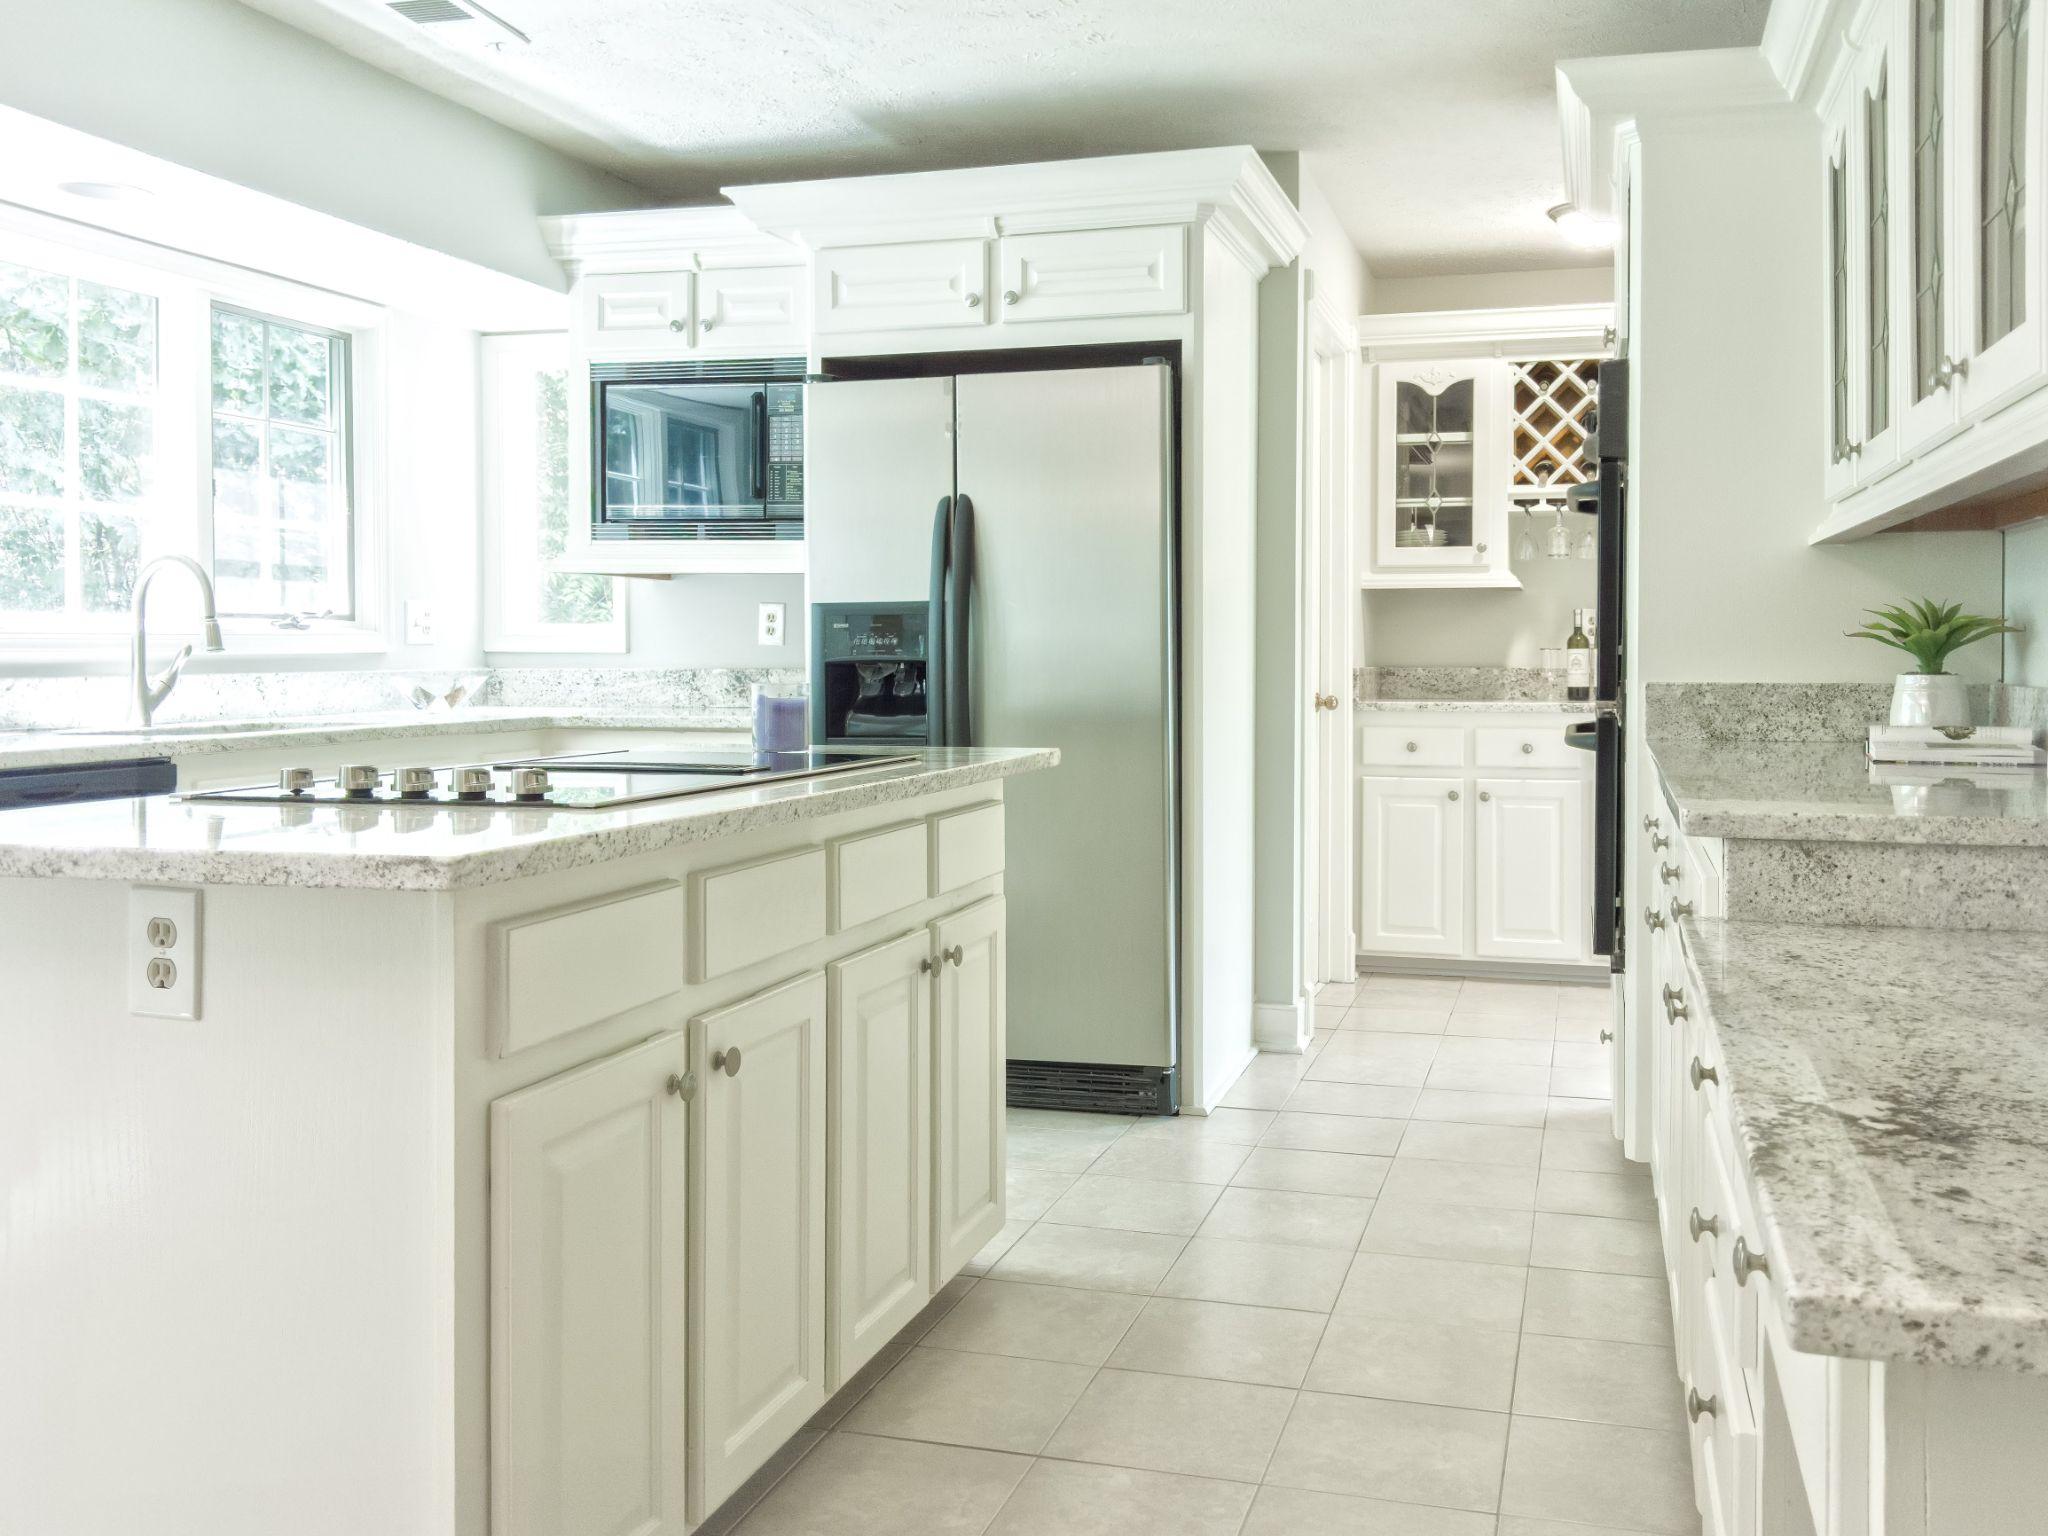 Luxurious modern kitchen interior with white wooden kitchen cabinet